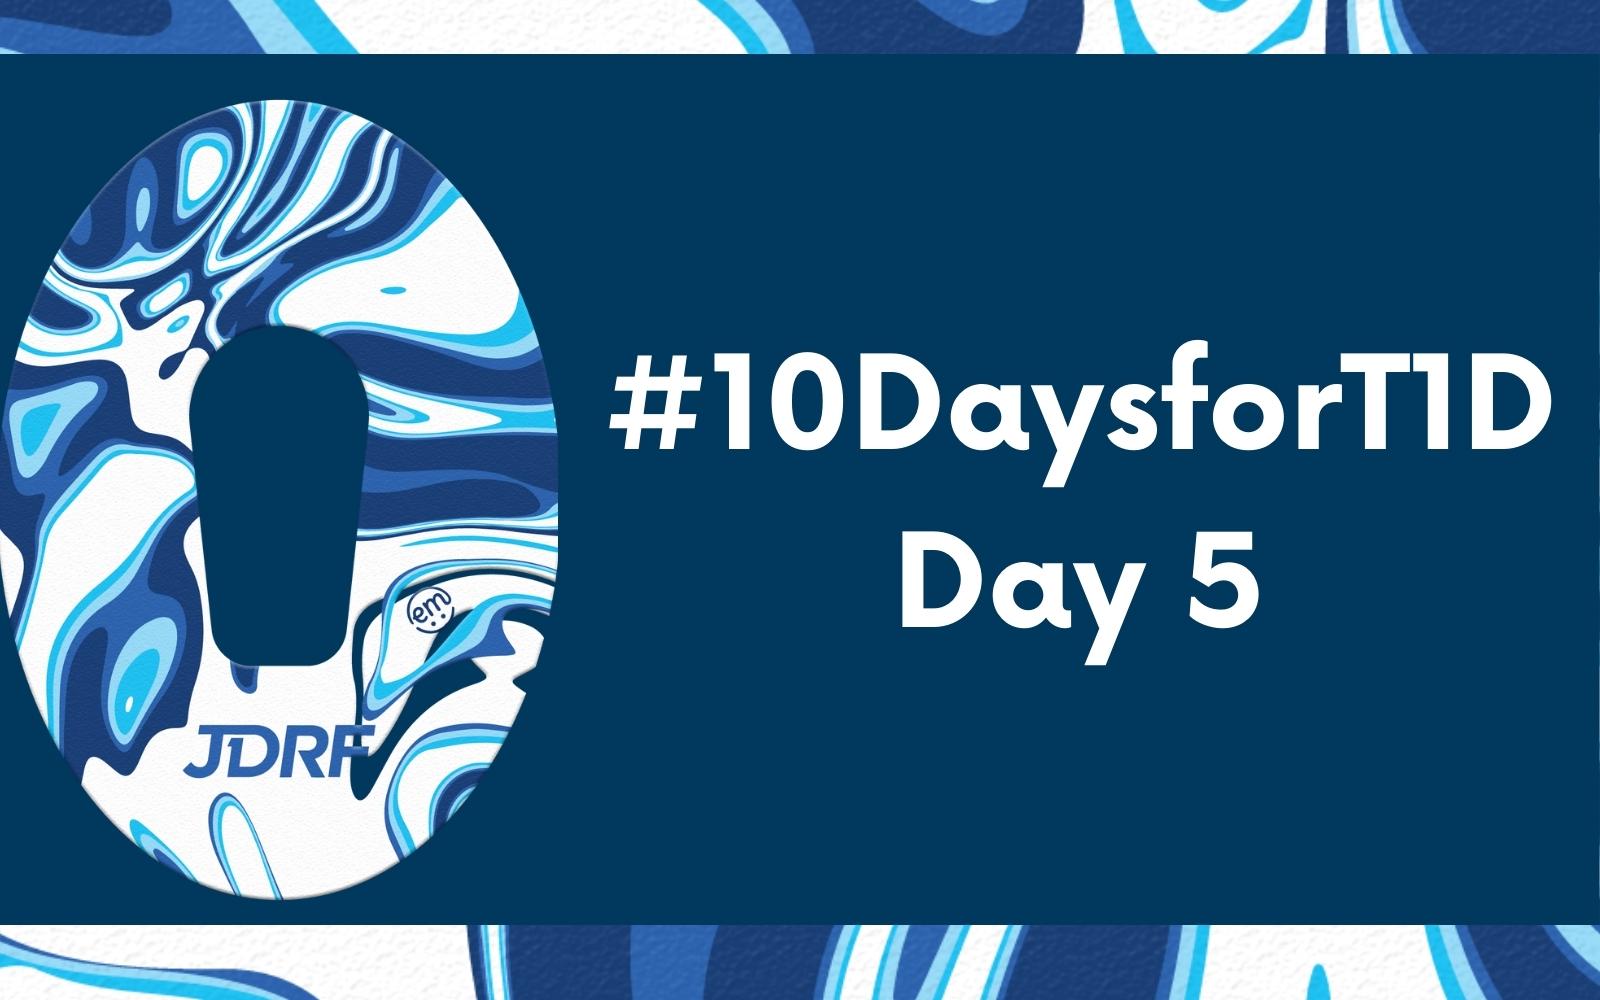 #10DaysforT1D Challenge Day 5